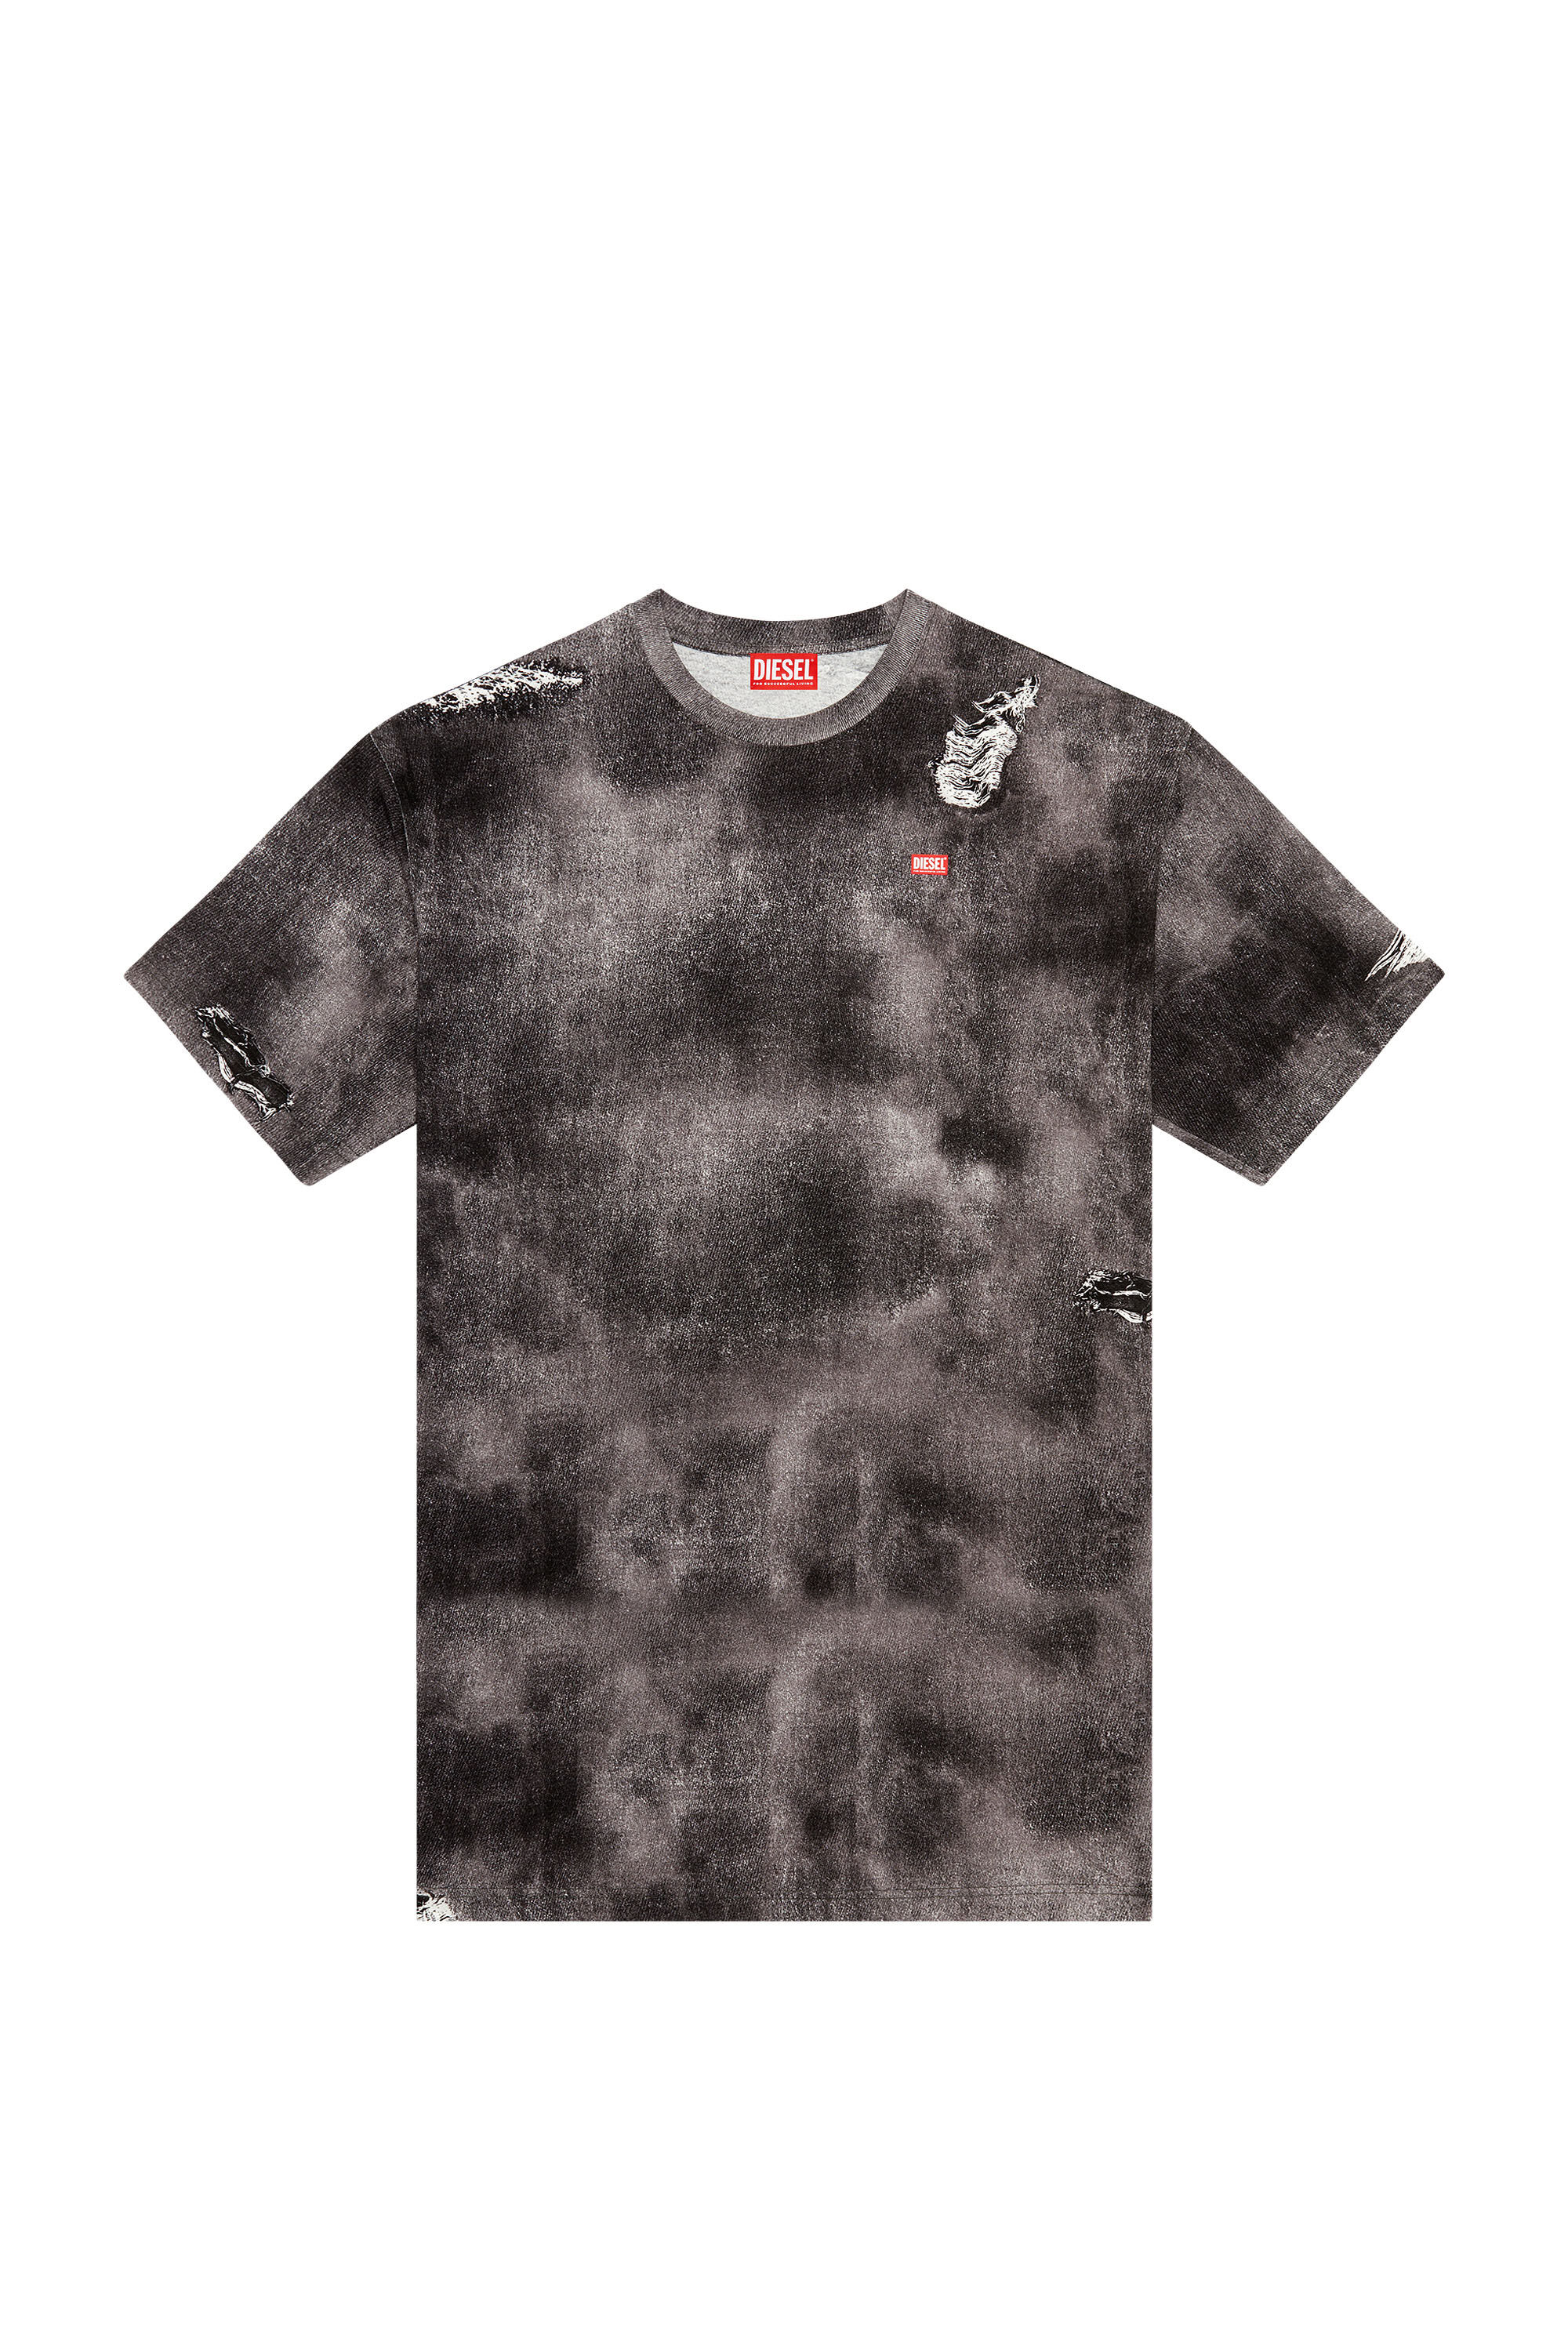 Men's T-shirt with trompe l'oeil denim print | Black | Diesel